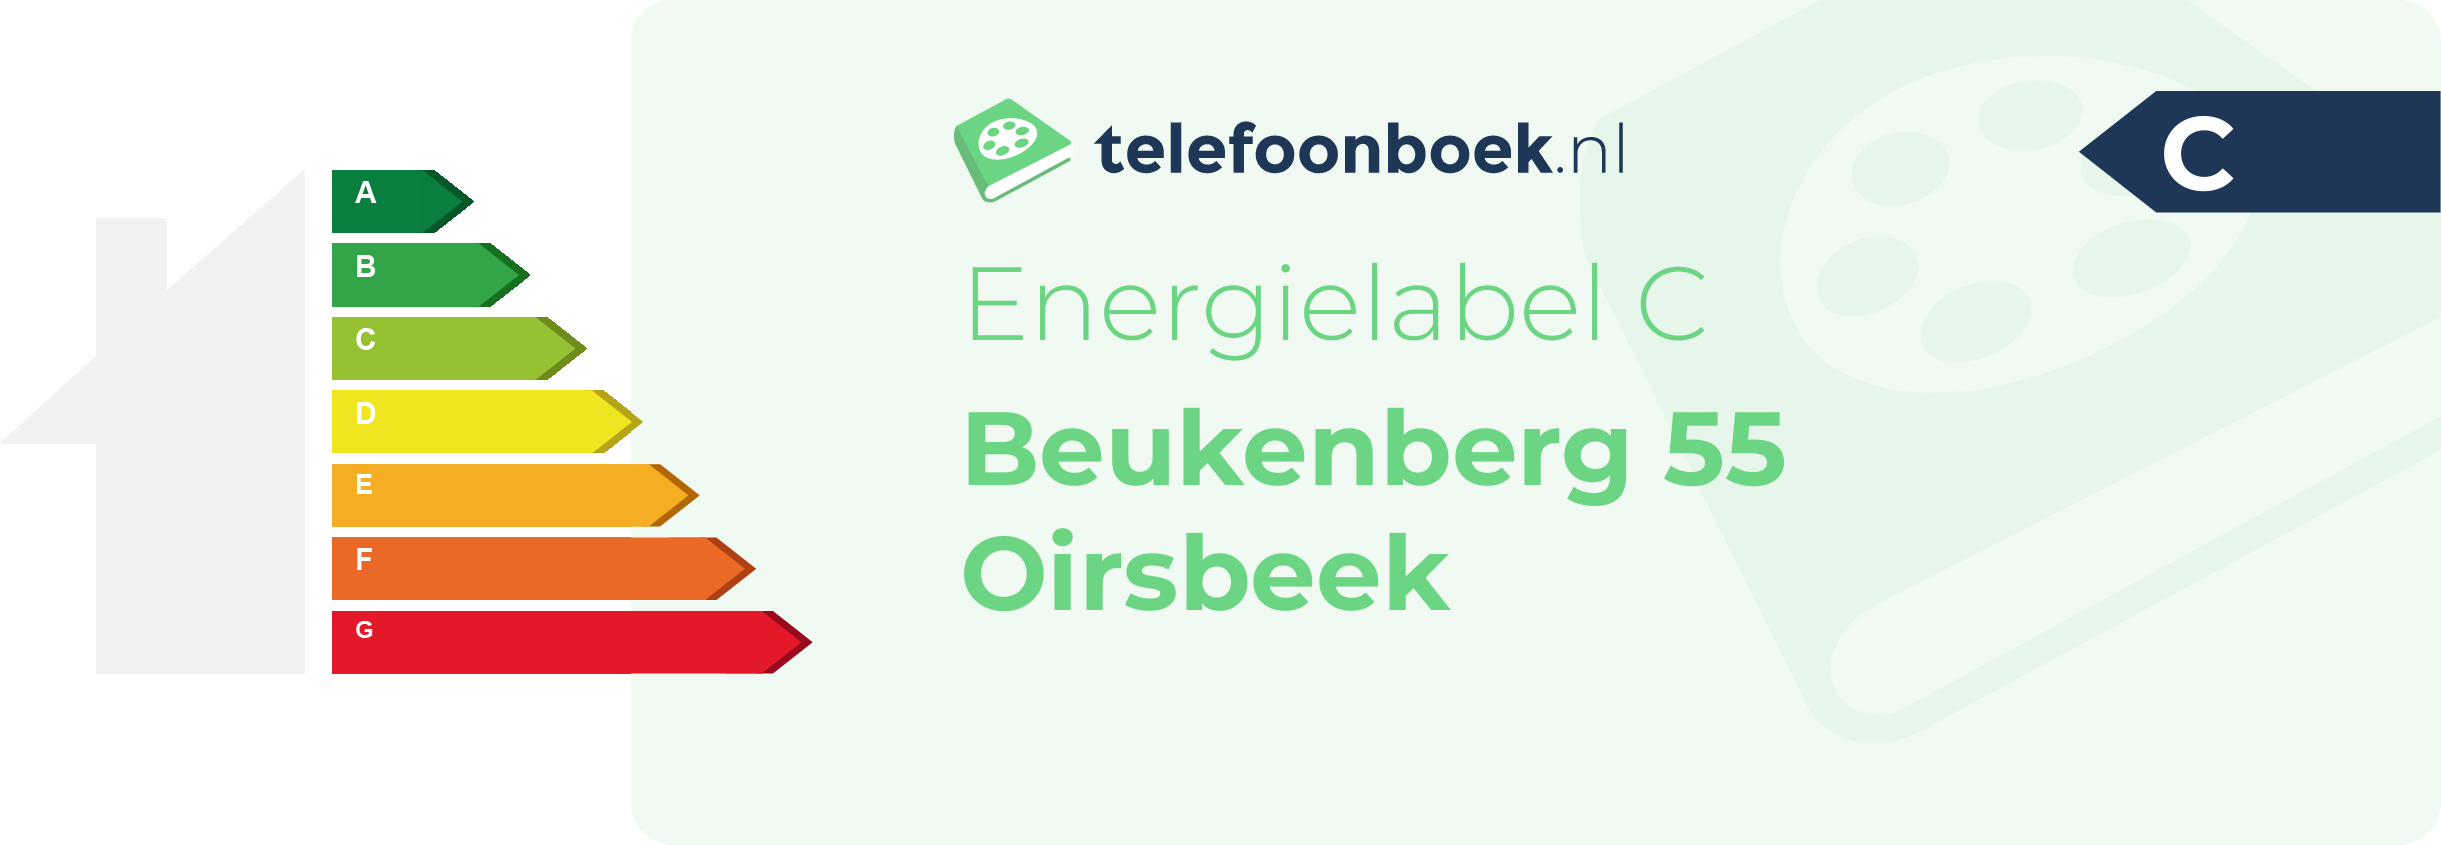 Energielabel Beukenberg 55 Oirsbeek